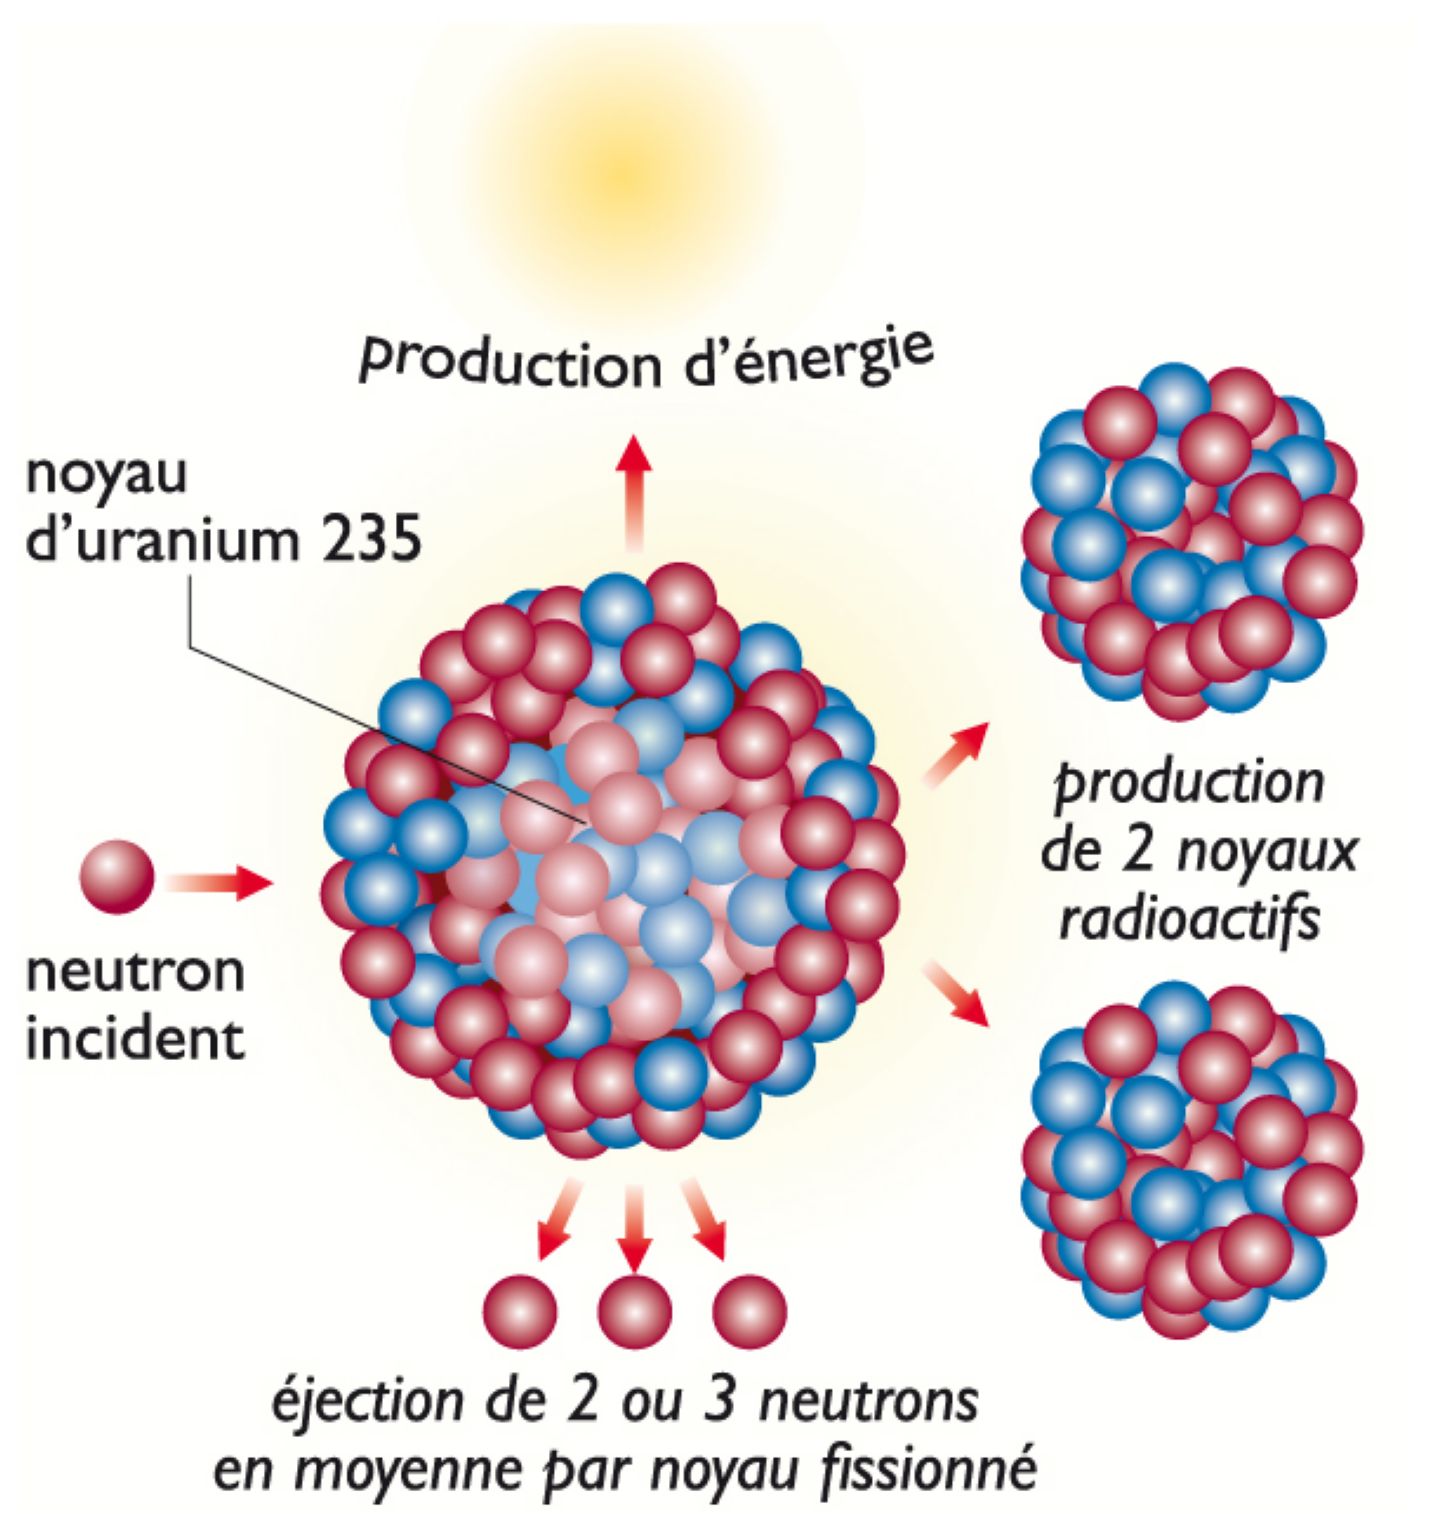 principe de la fission nucléaire à partir de l’uranium 235